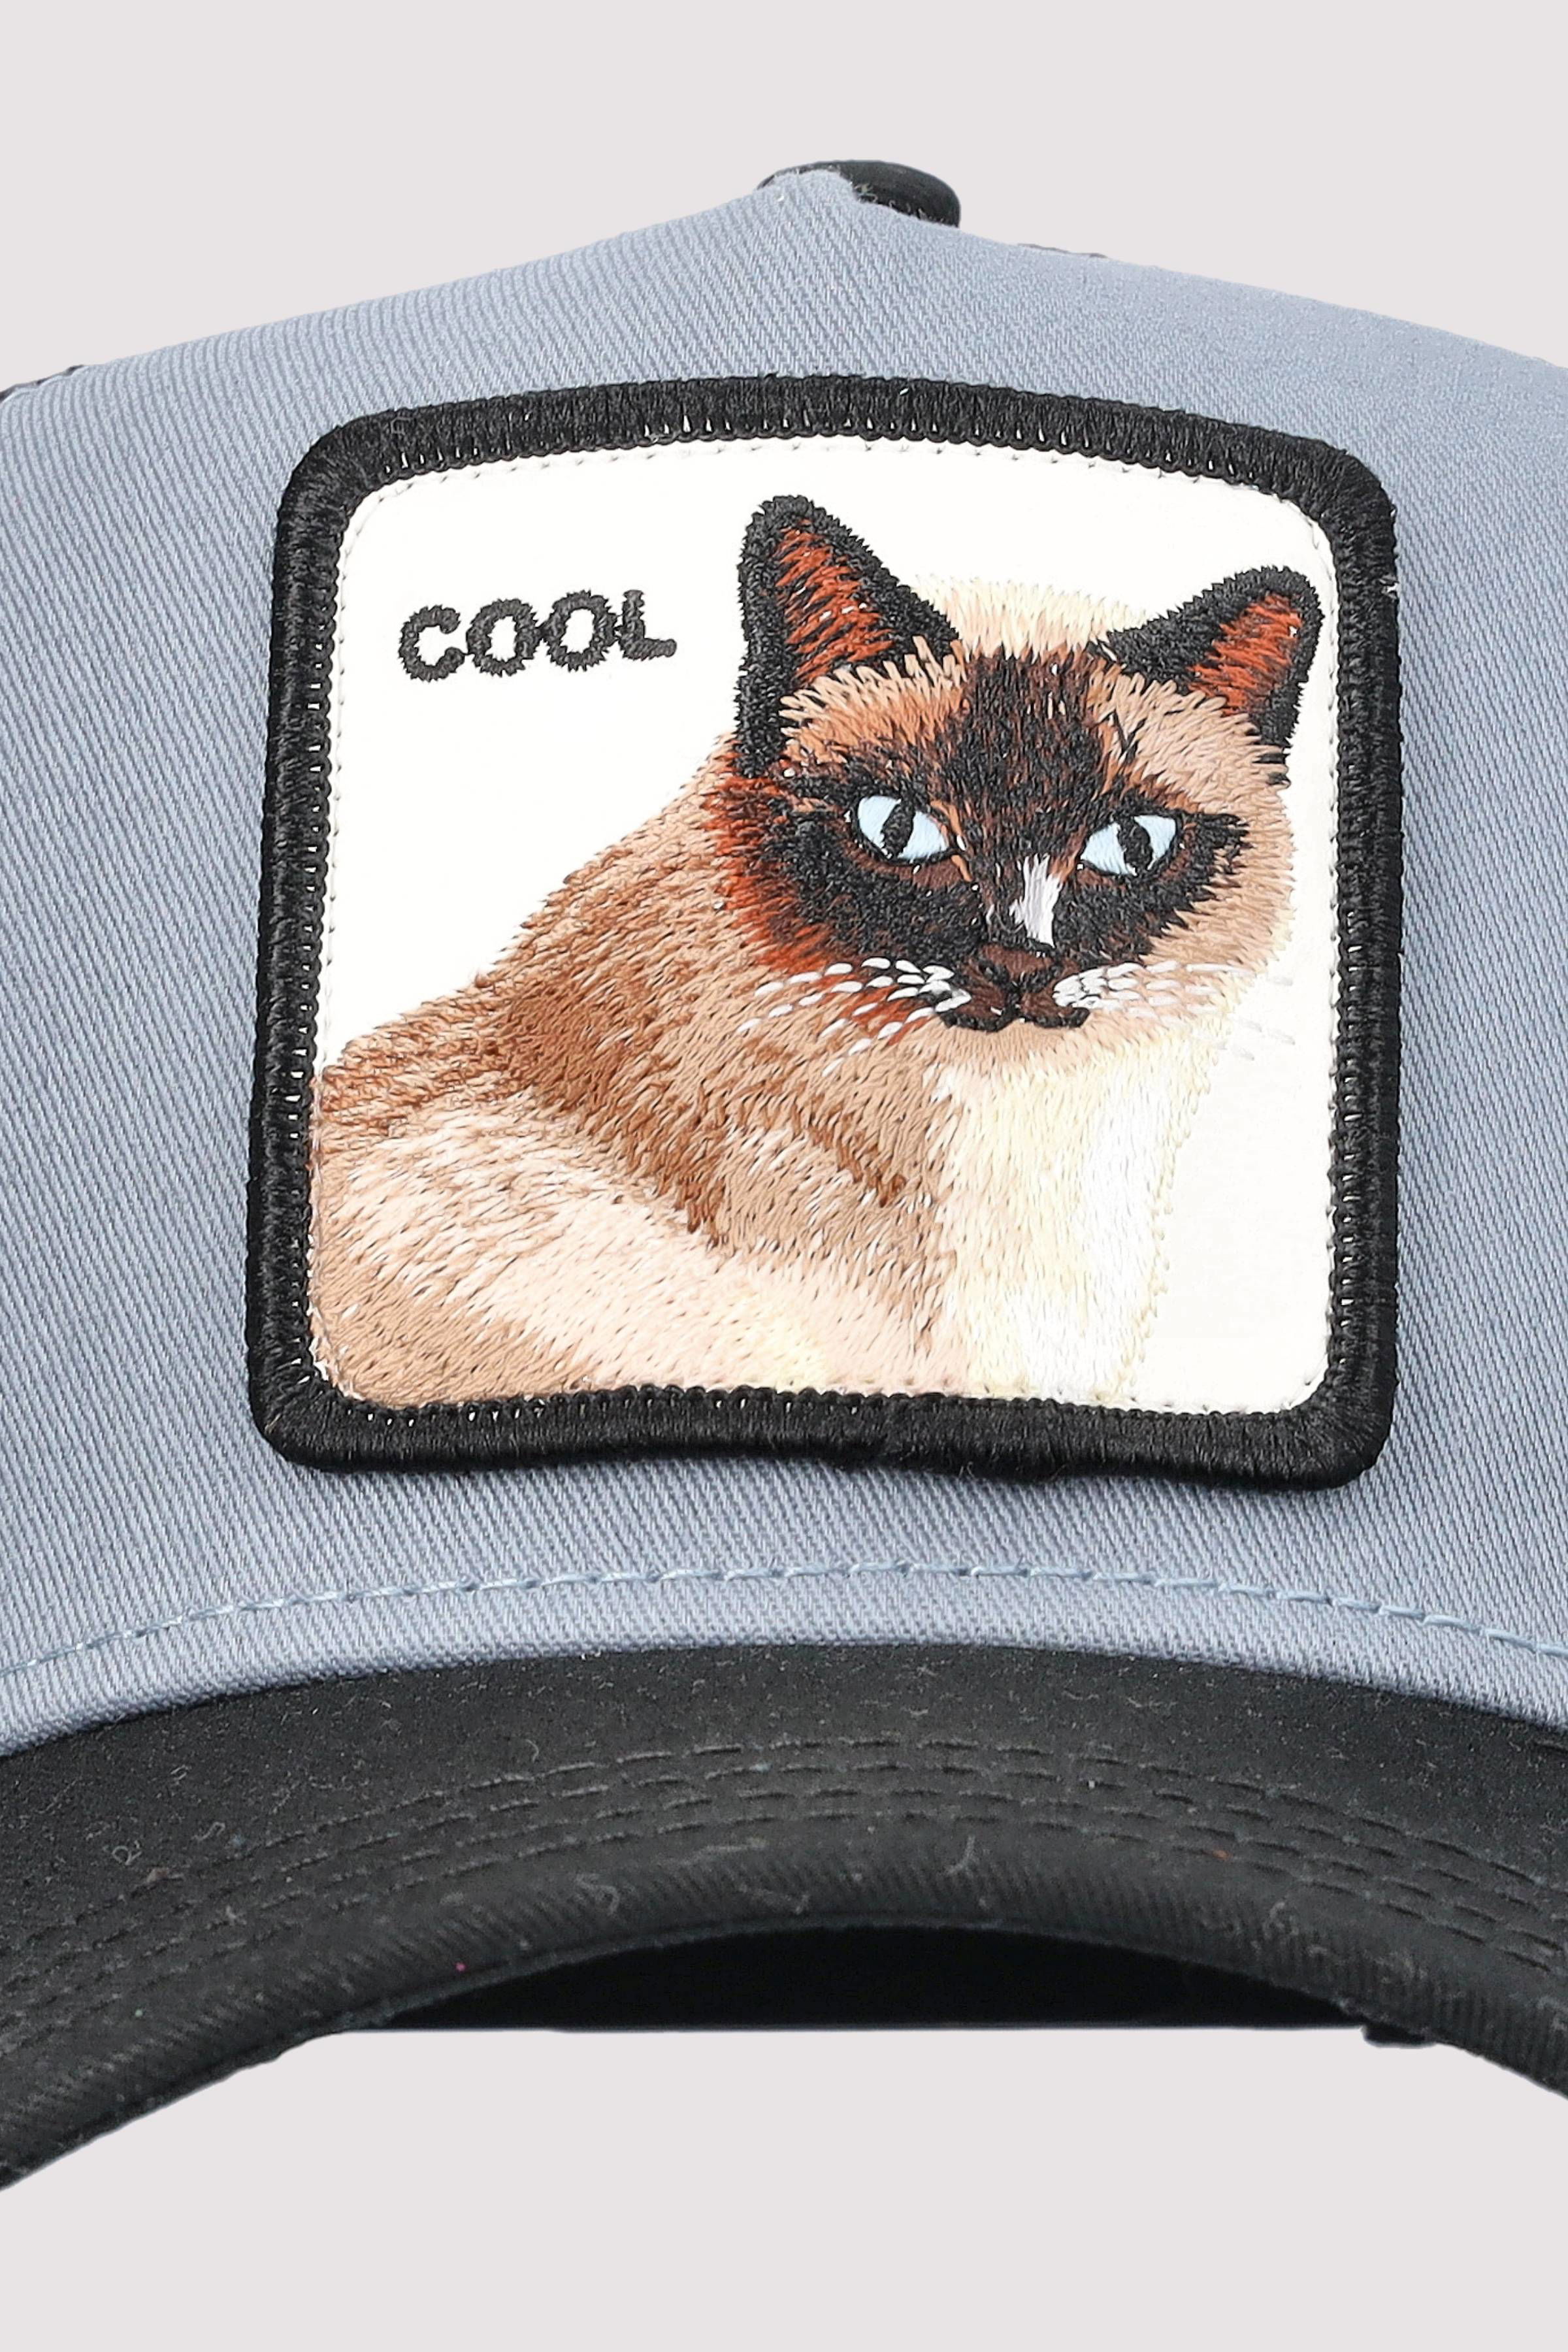 V2 Cool Cat